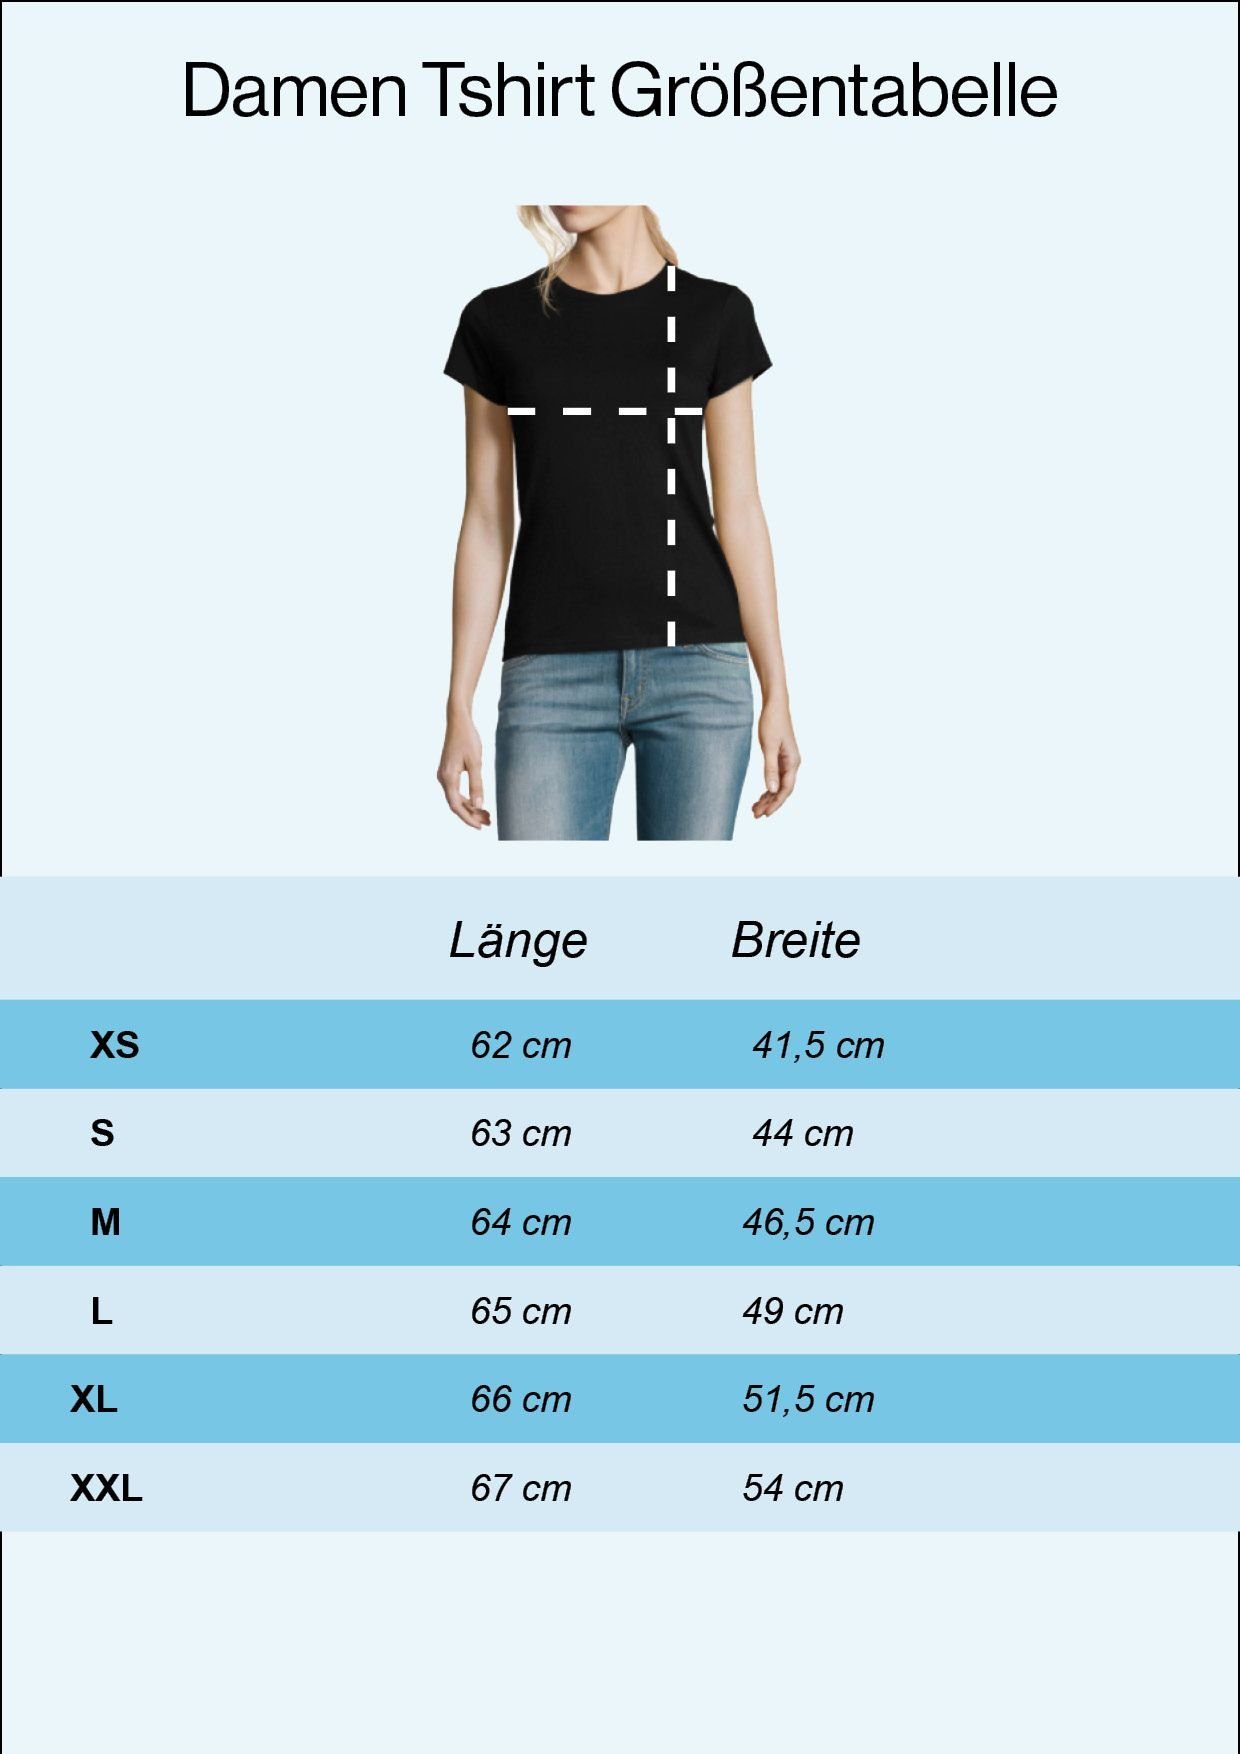 Youth Designz T-Shirt Wander Woman Weiss Print T-Shirt modischem Mit Damen